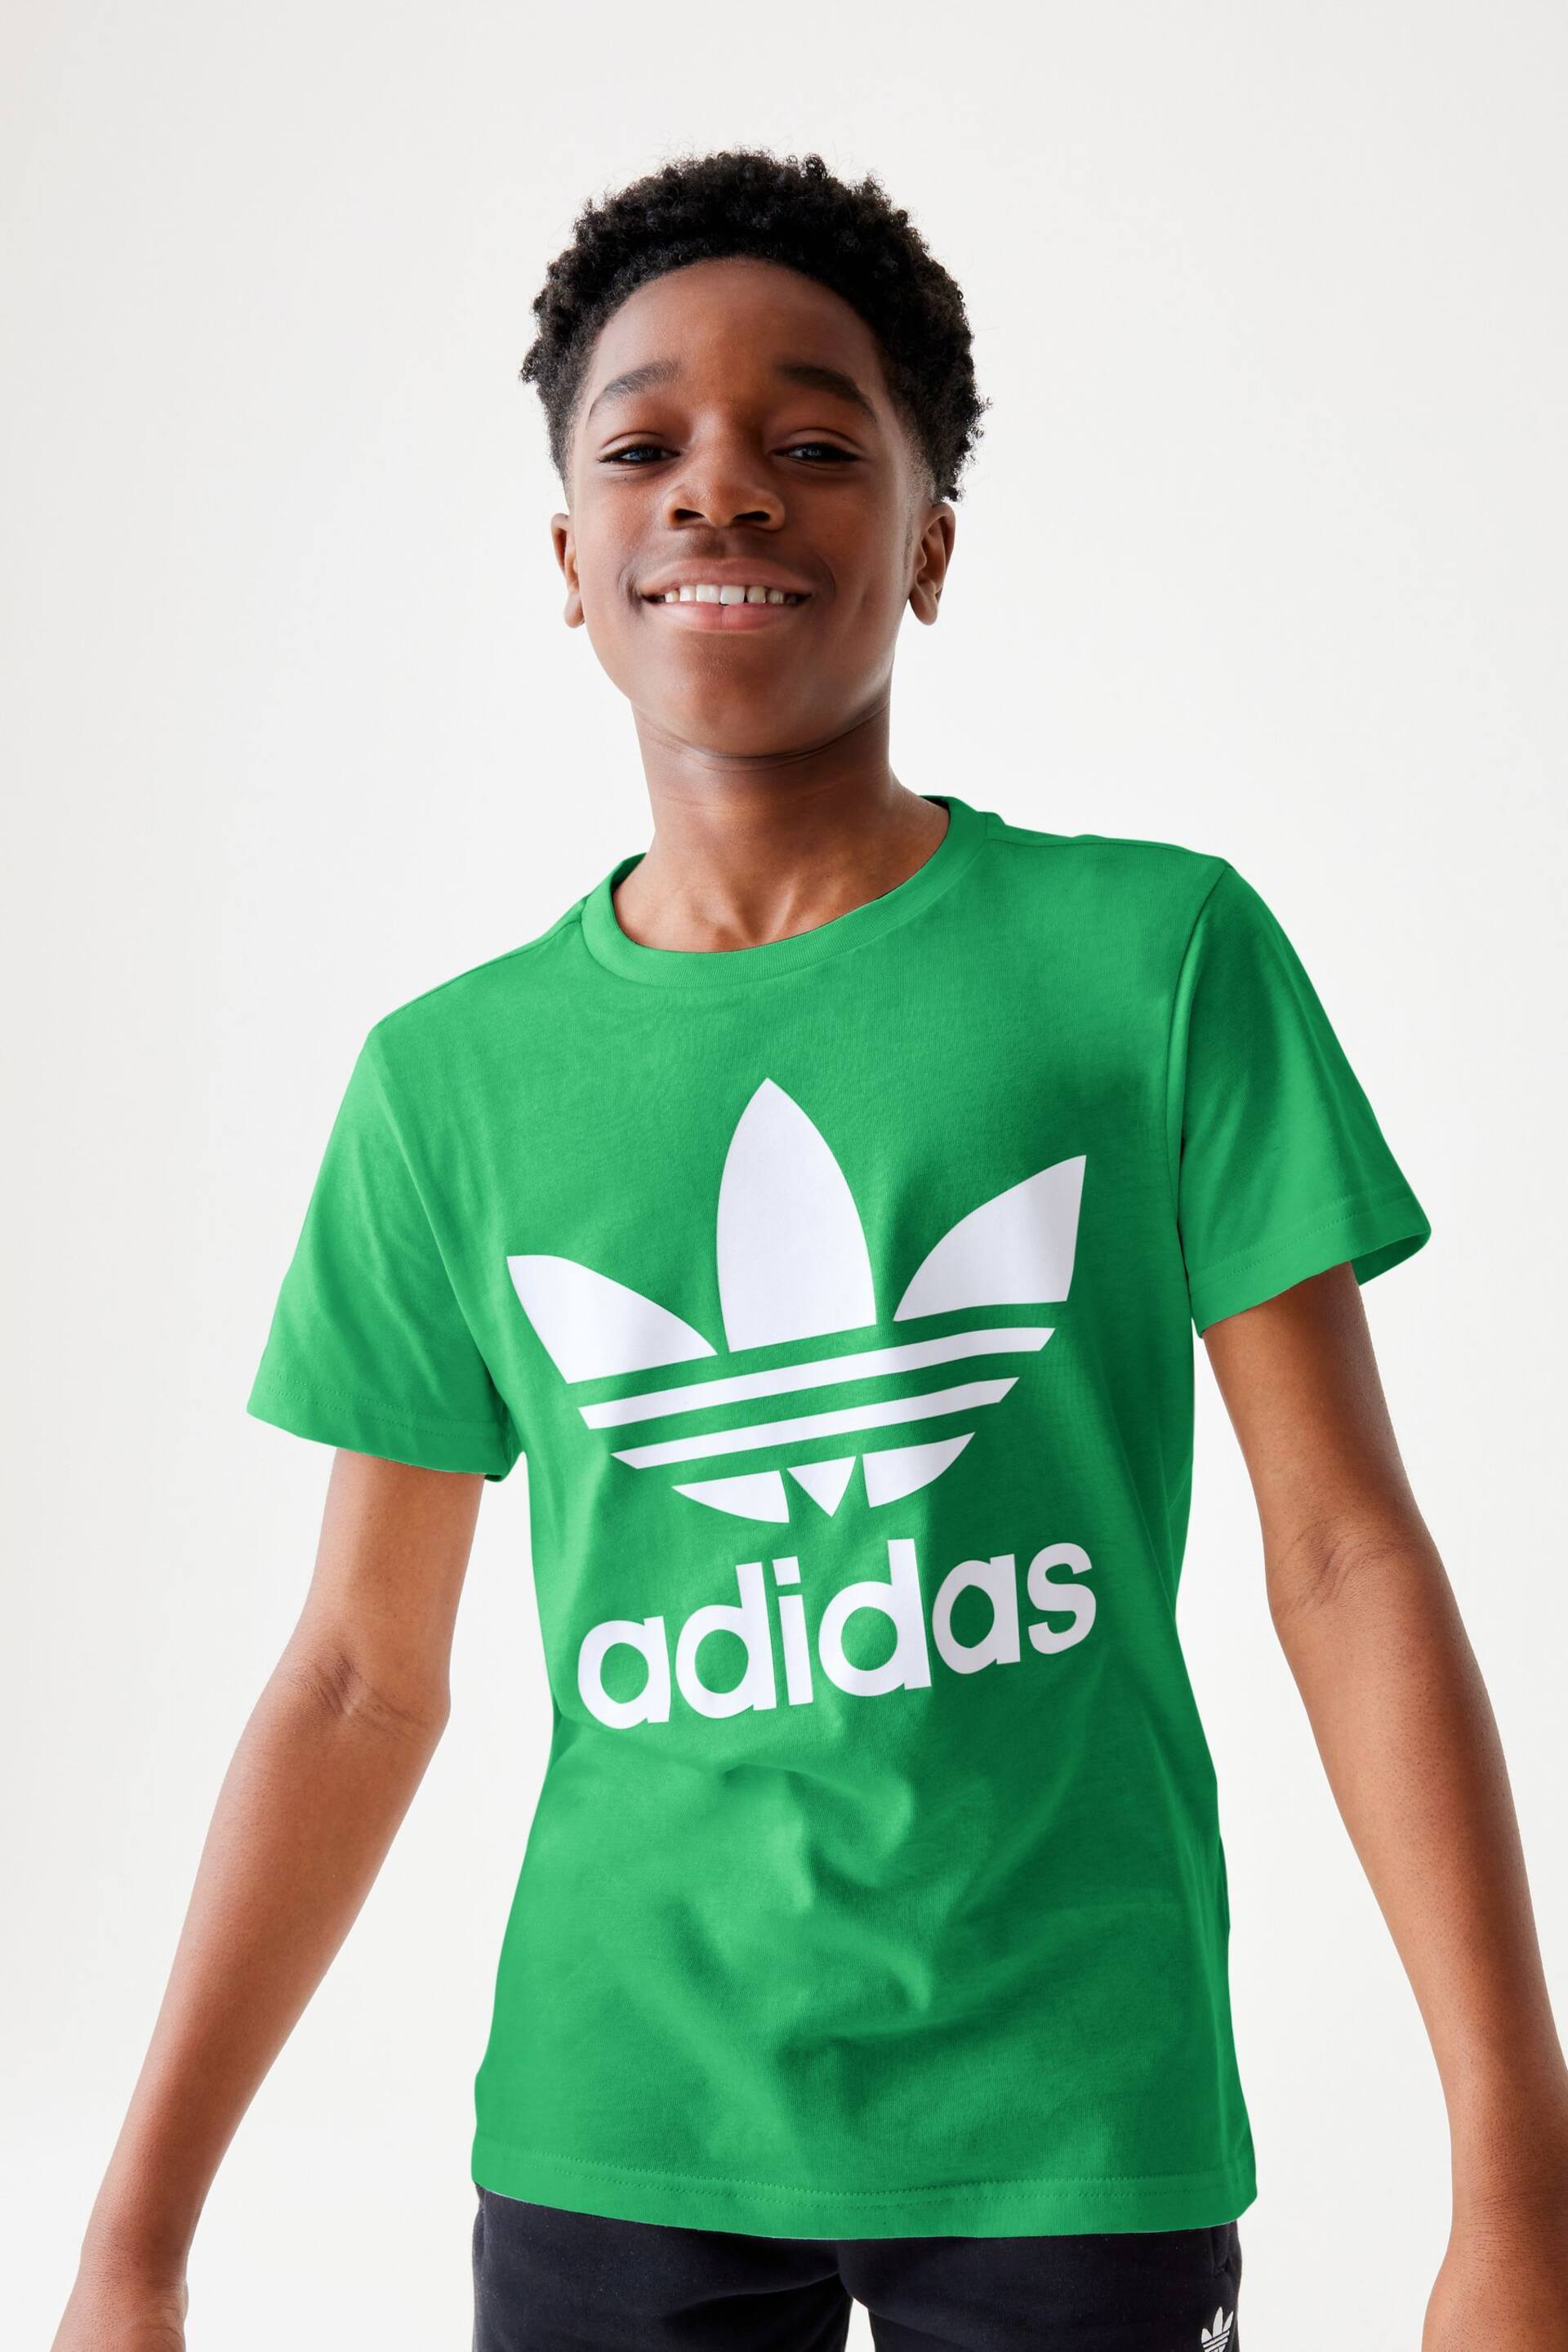 adidas Originals 3-Stripes T-Shirt - Image 1 of 7